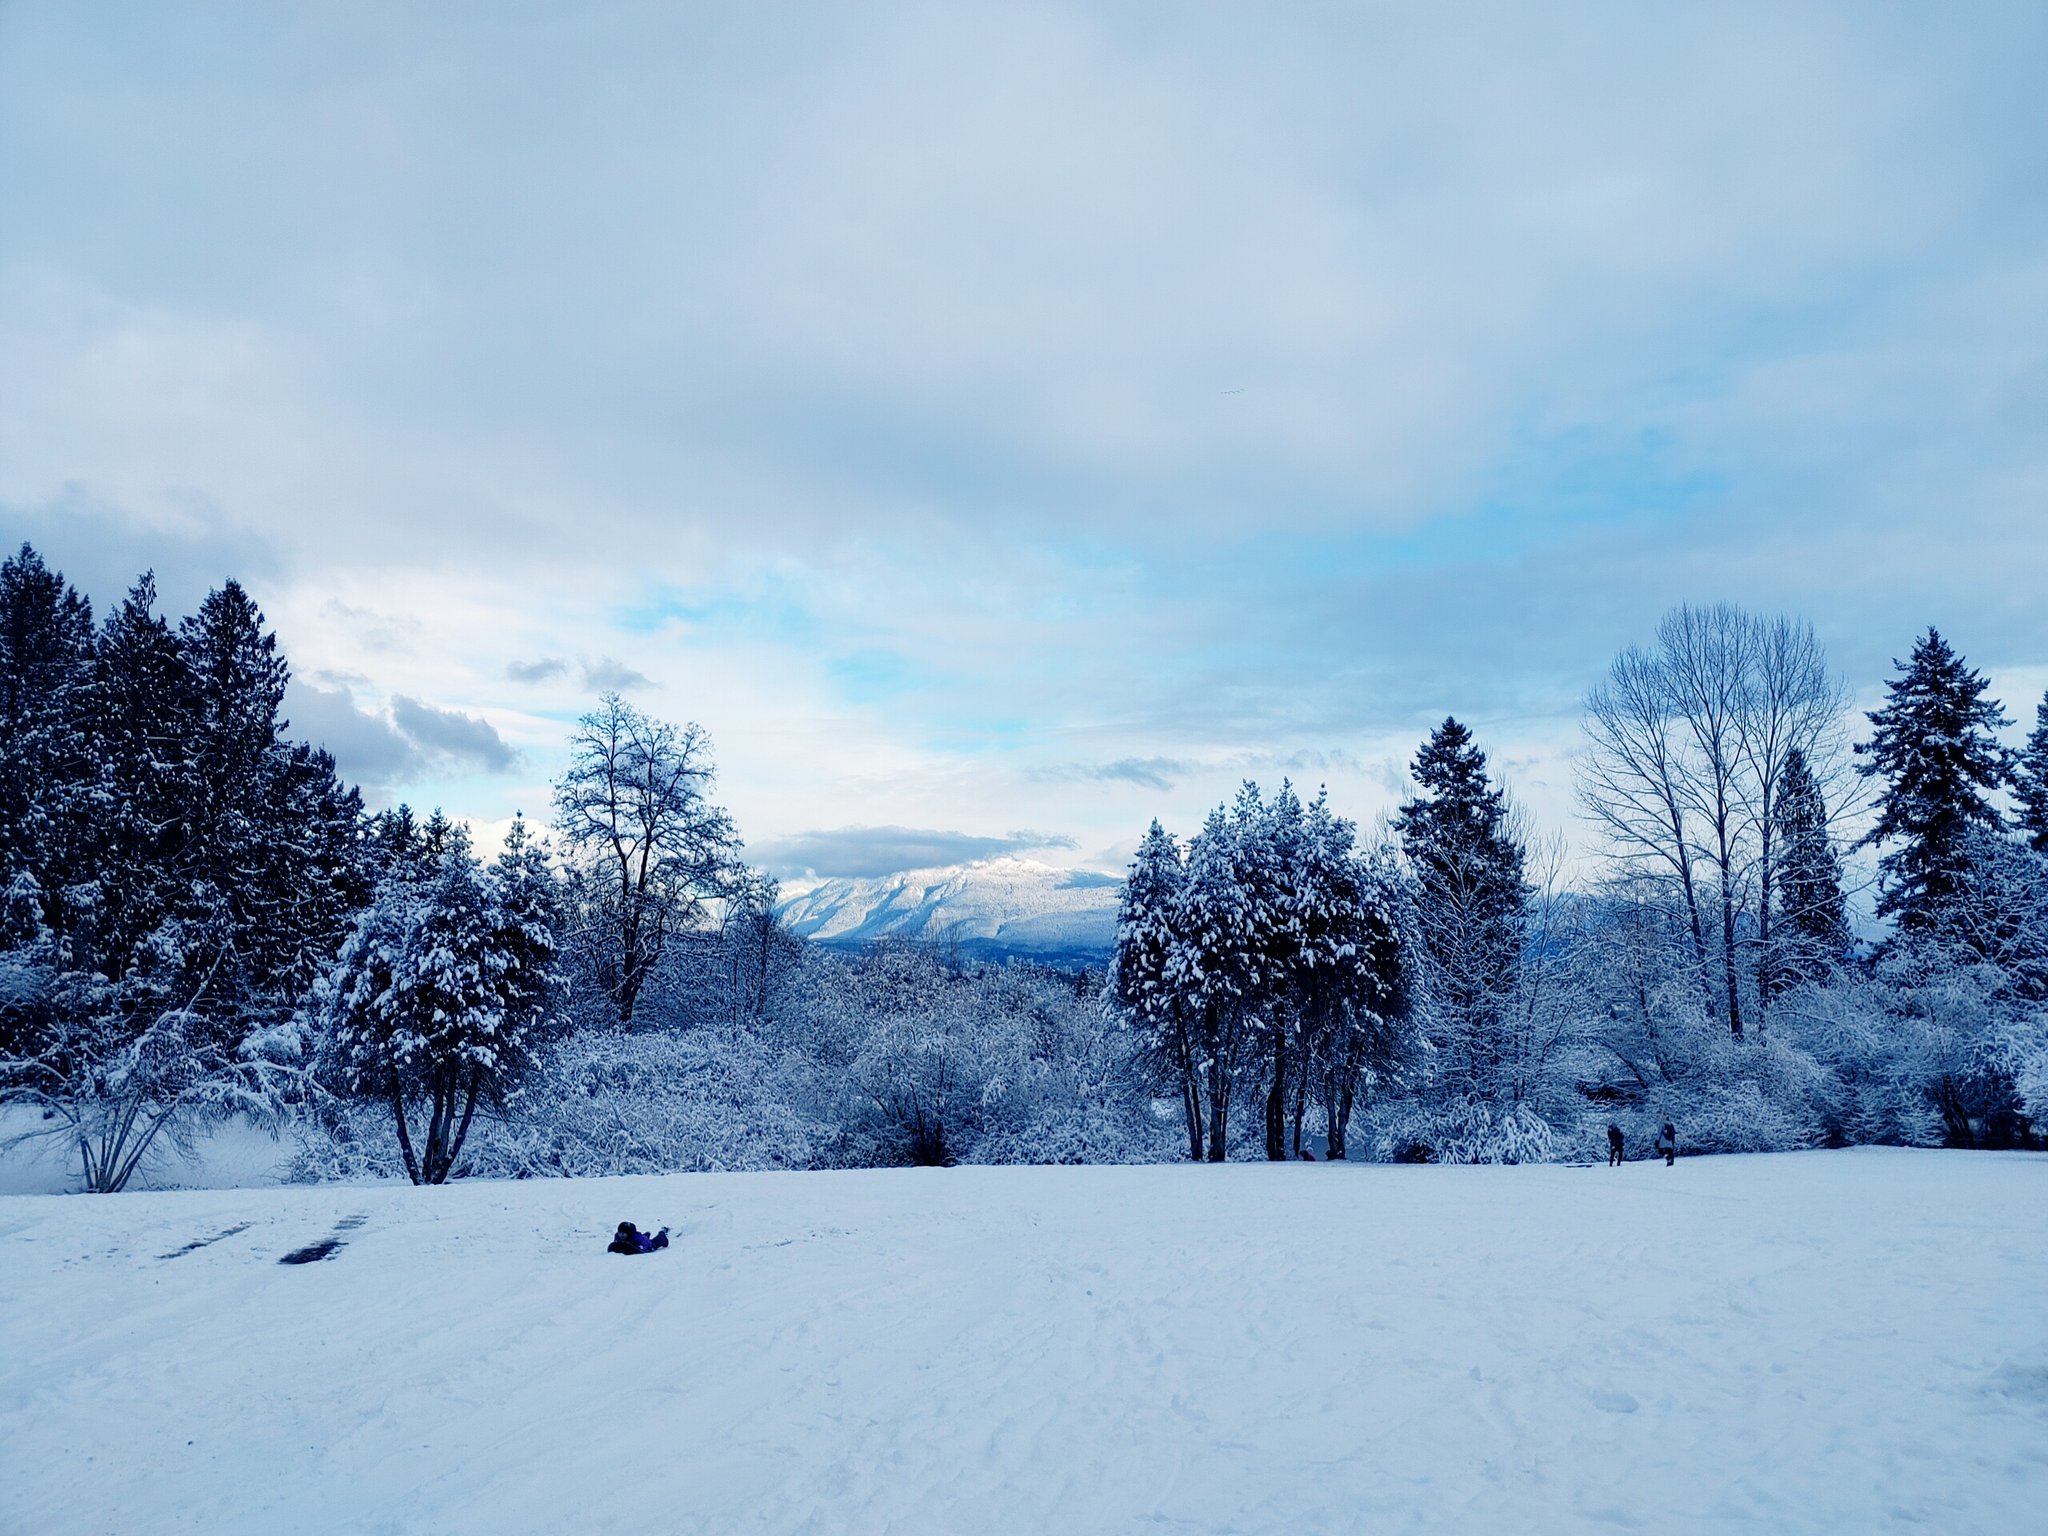 カナダマニュアル めずらしく雪が積もったバンクーバー 市内の観光スポットでもあるクイーンエリザベスパークからの景色をお届けします T Co W1opugumt1 Twitter